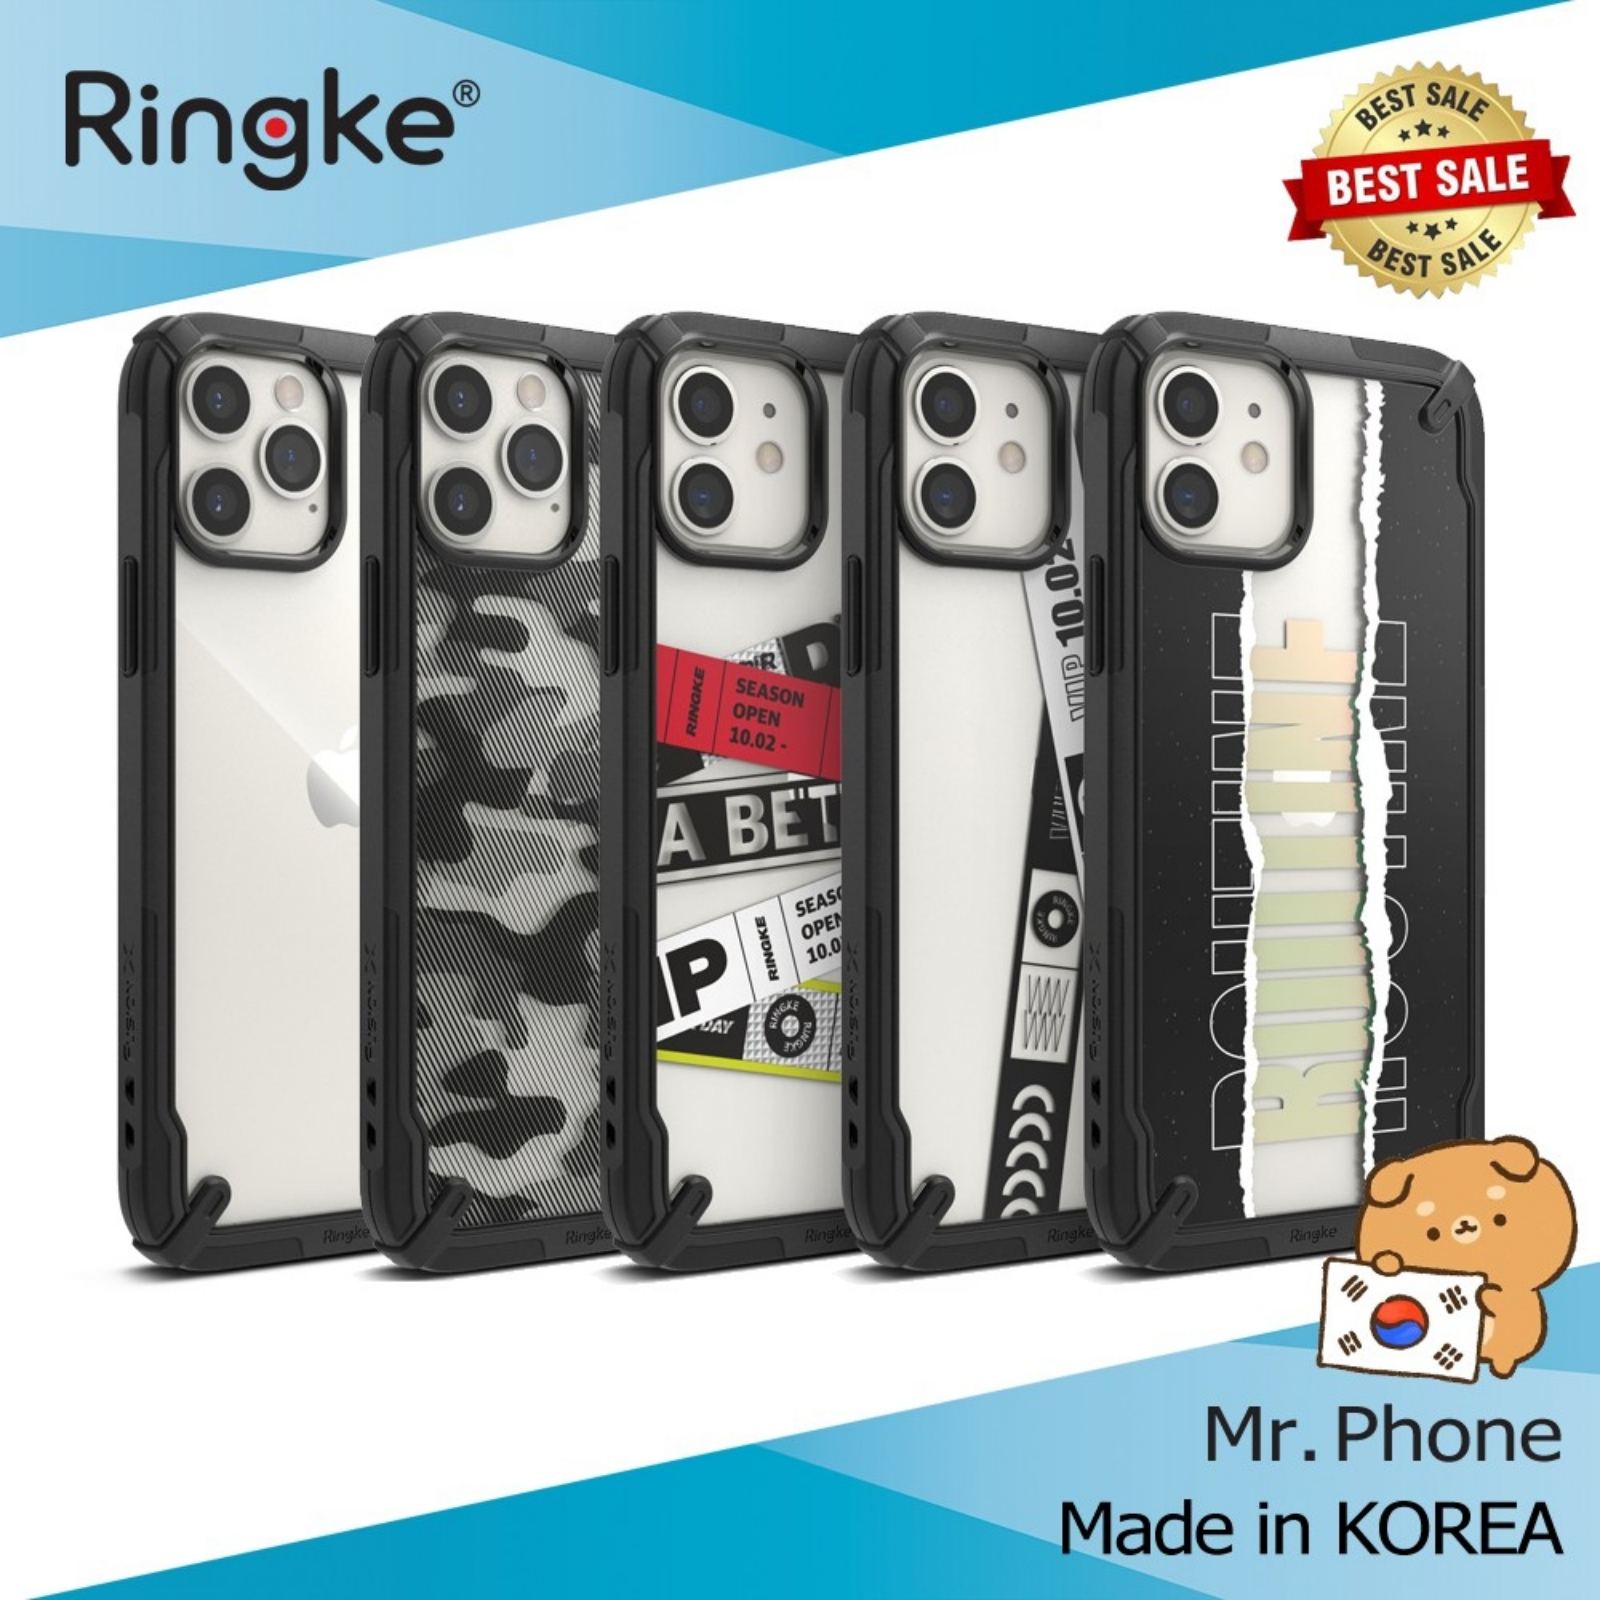 Ốp lưng iPhone 12 Pro Max / 12 Pro / 12 / 12 mini Ringke Fusion X - Nhập khẩu Hàn Quốc